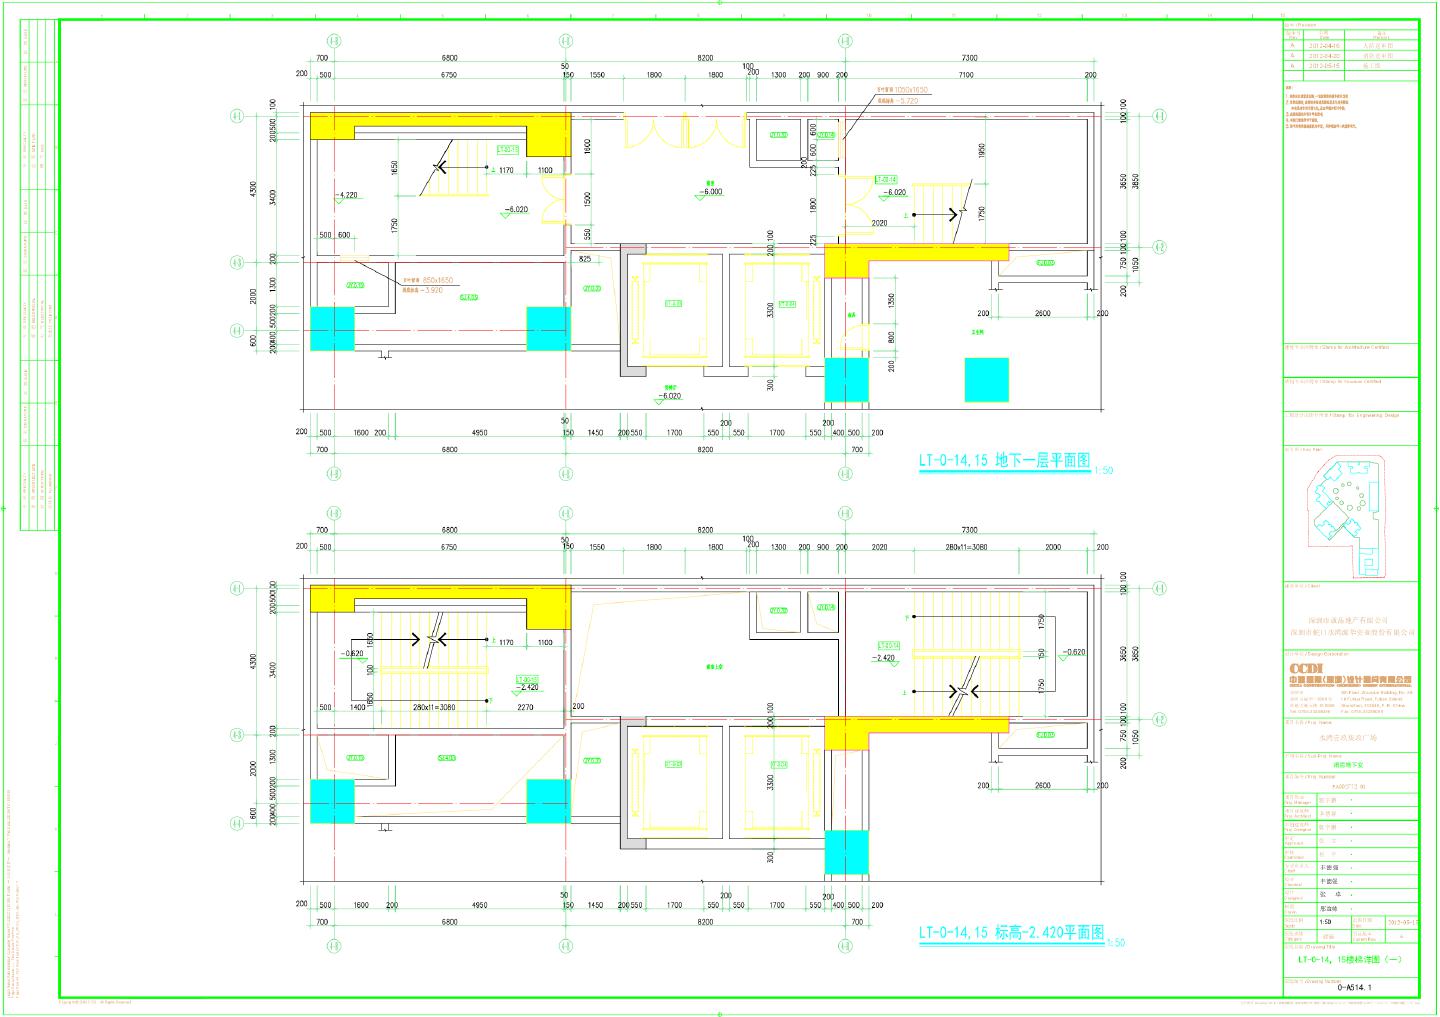 水湾壹玖柒玖广场裙房地下室-LT-0-14，15楼梯详图CAD图